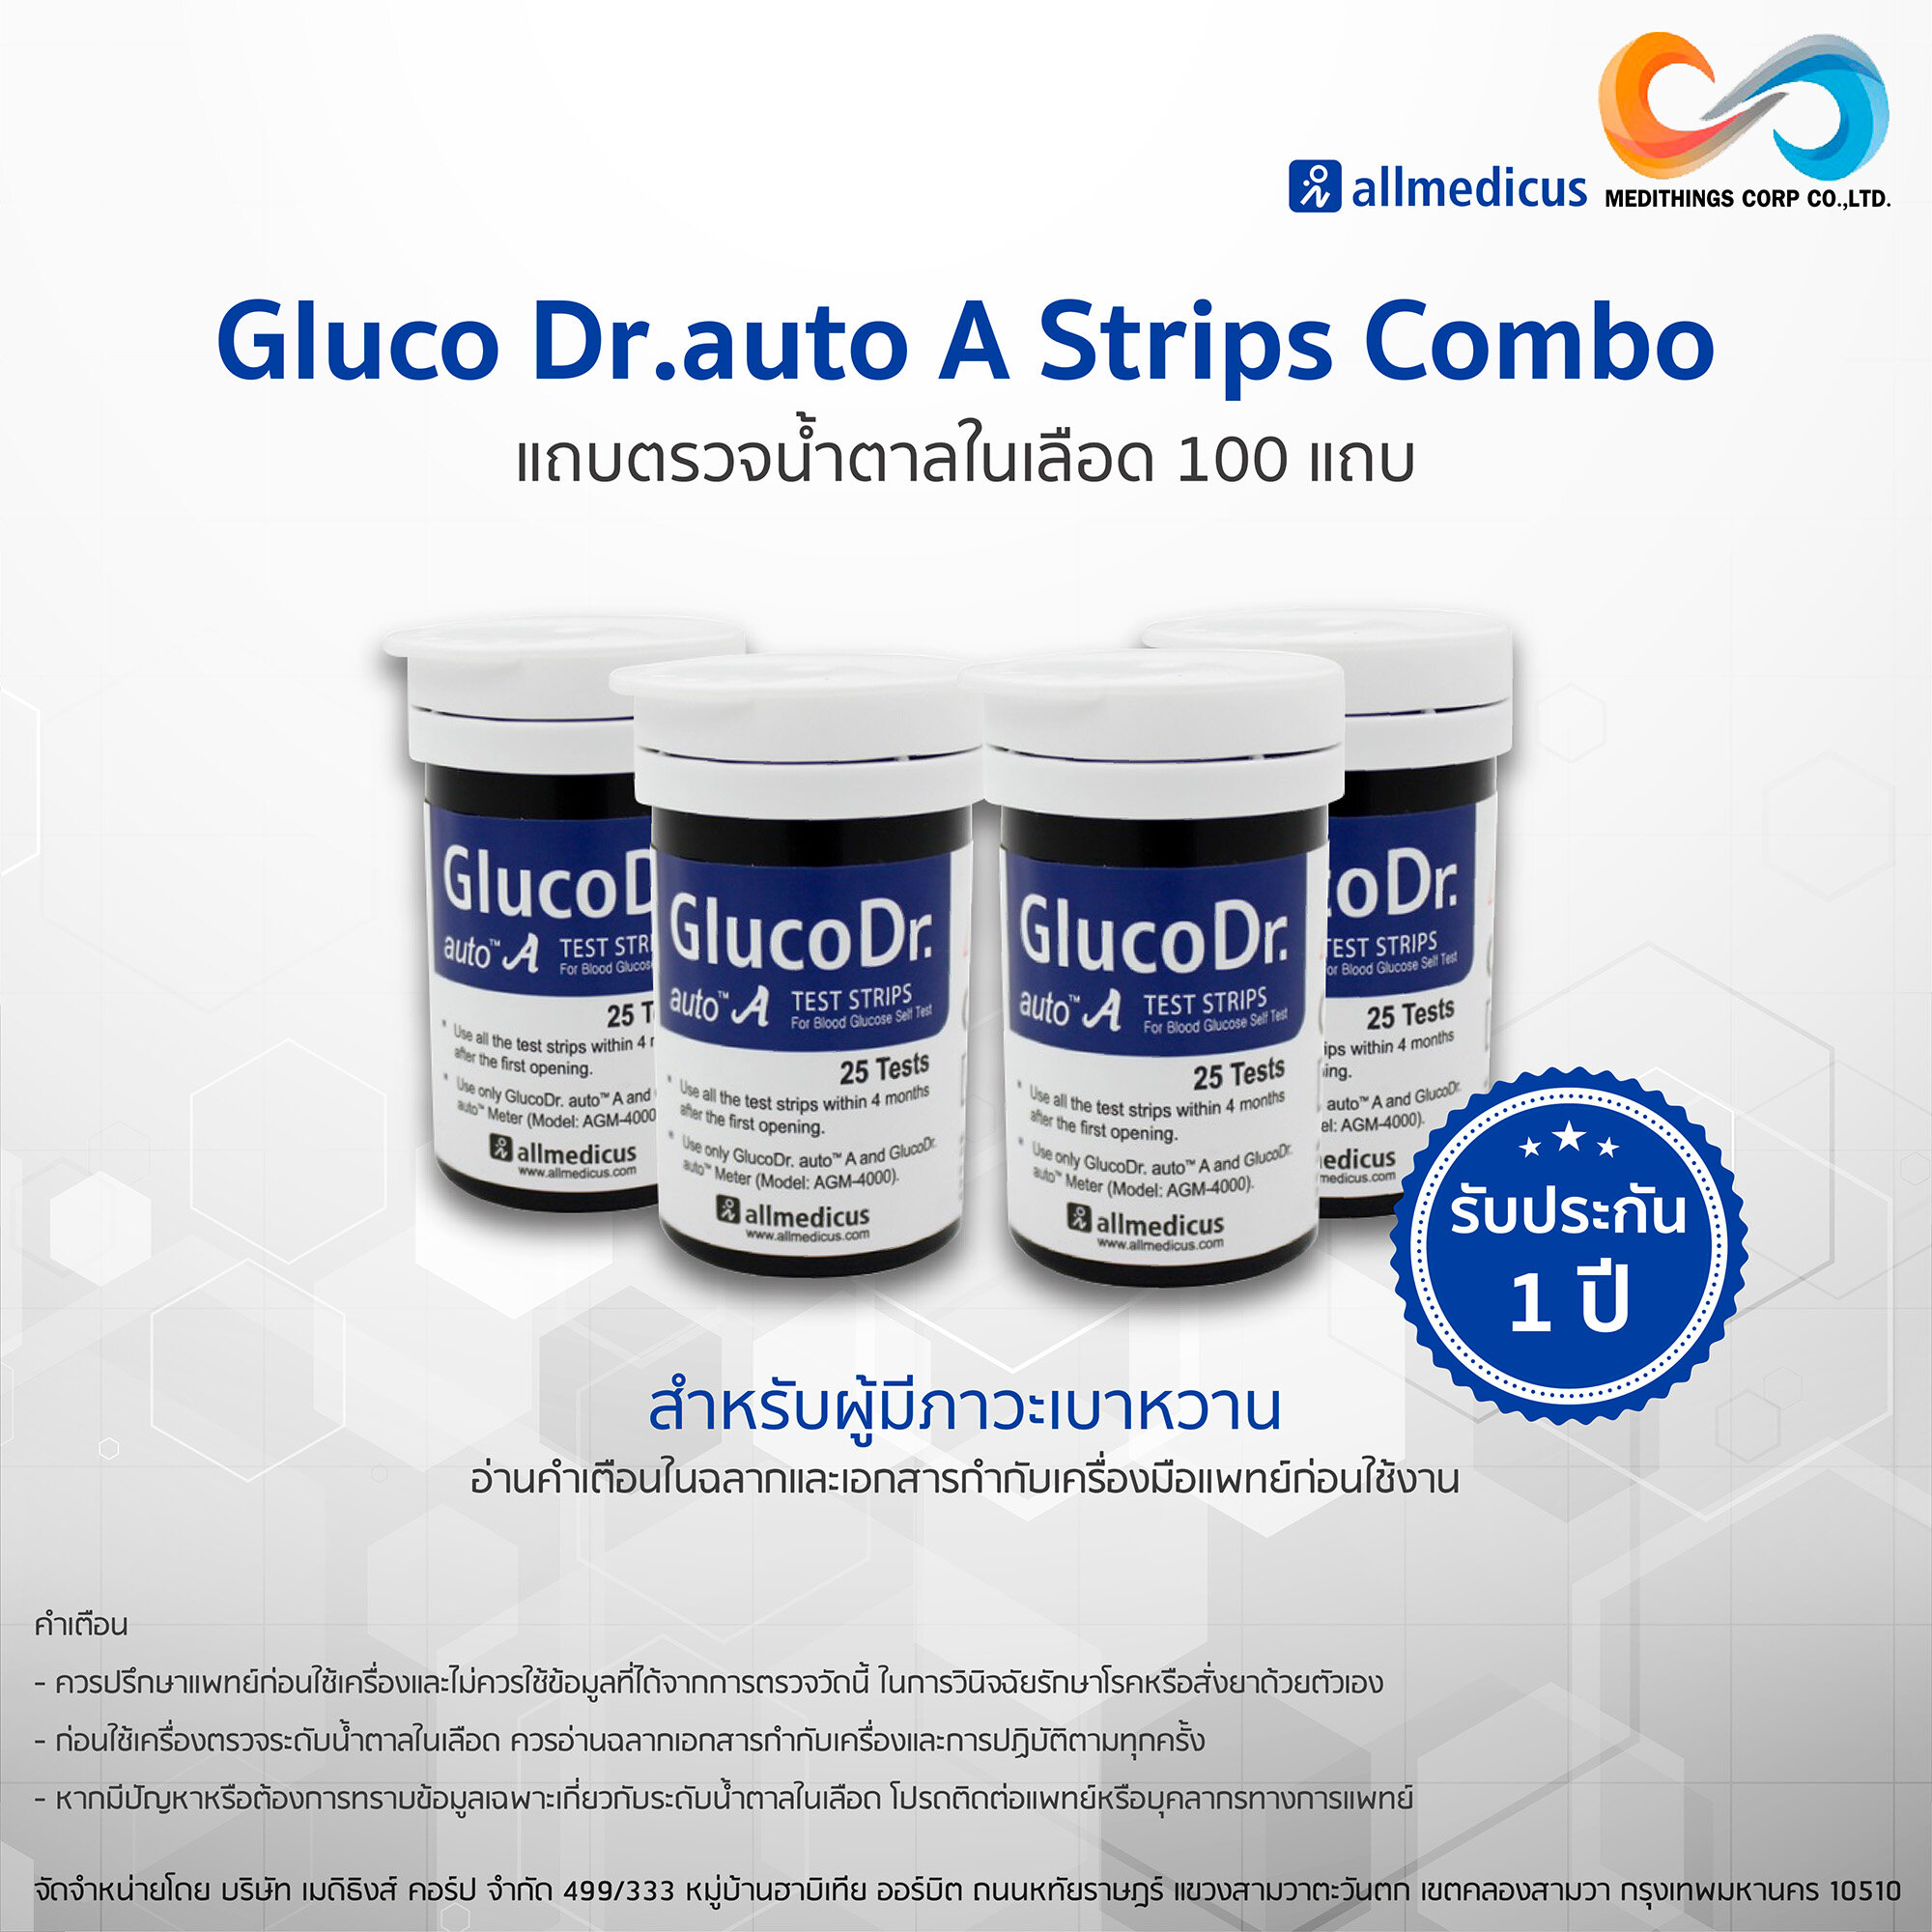 แถบตรวจน้ำตาล 4 ขวด จำนวน 100 แถบ Gluco Dr.auto A Strips Combo